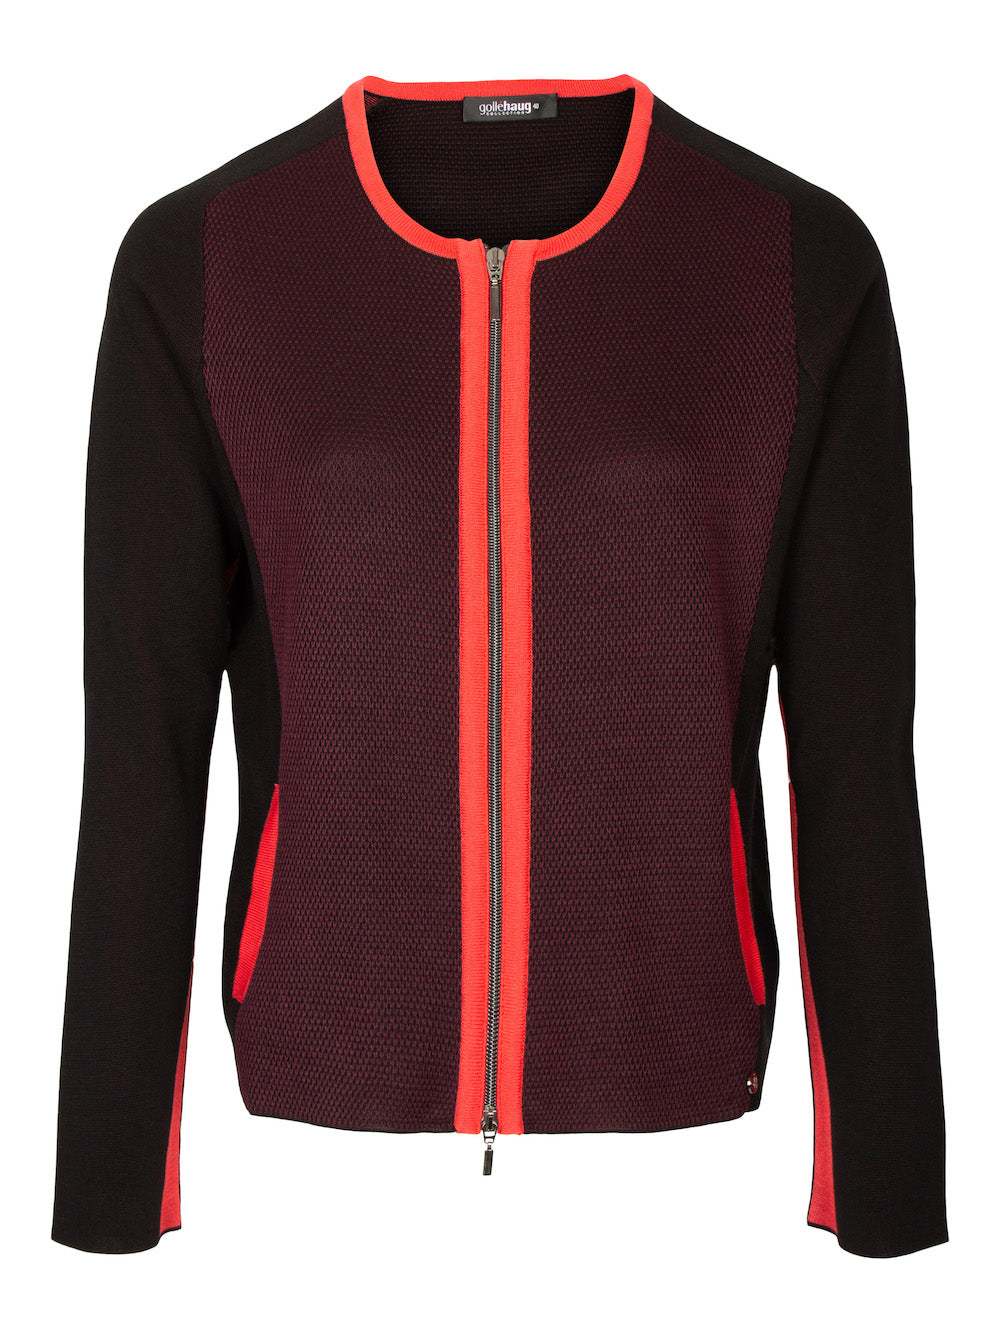 Gollé Haug - Vest met rits - bordeaux, zwart en warm rood - DRESSYOURPARENTS kleding voor seniore dames